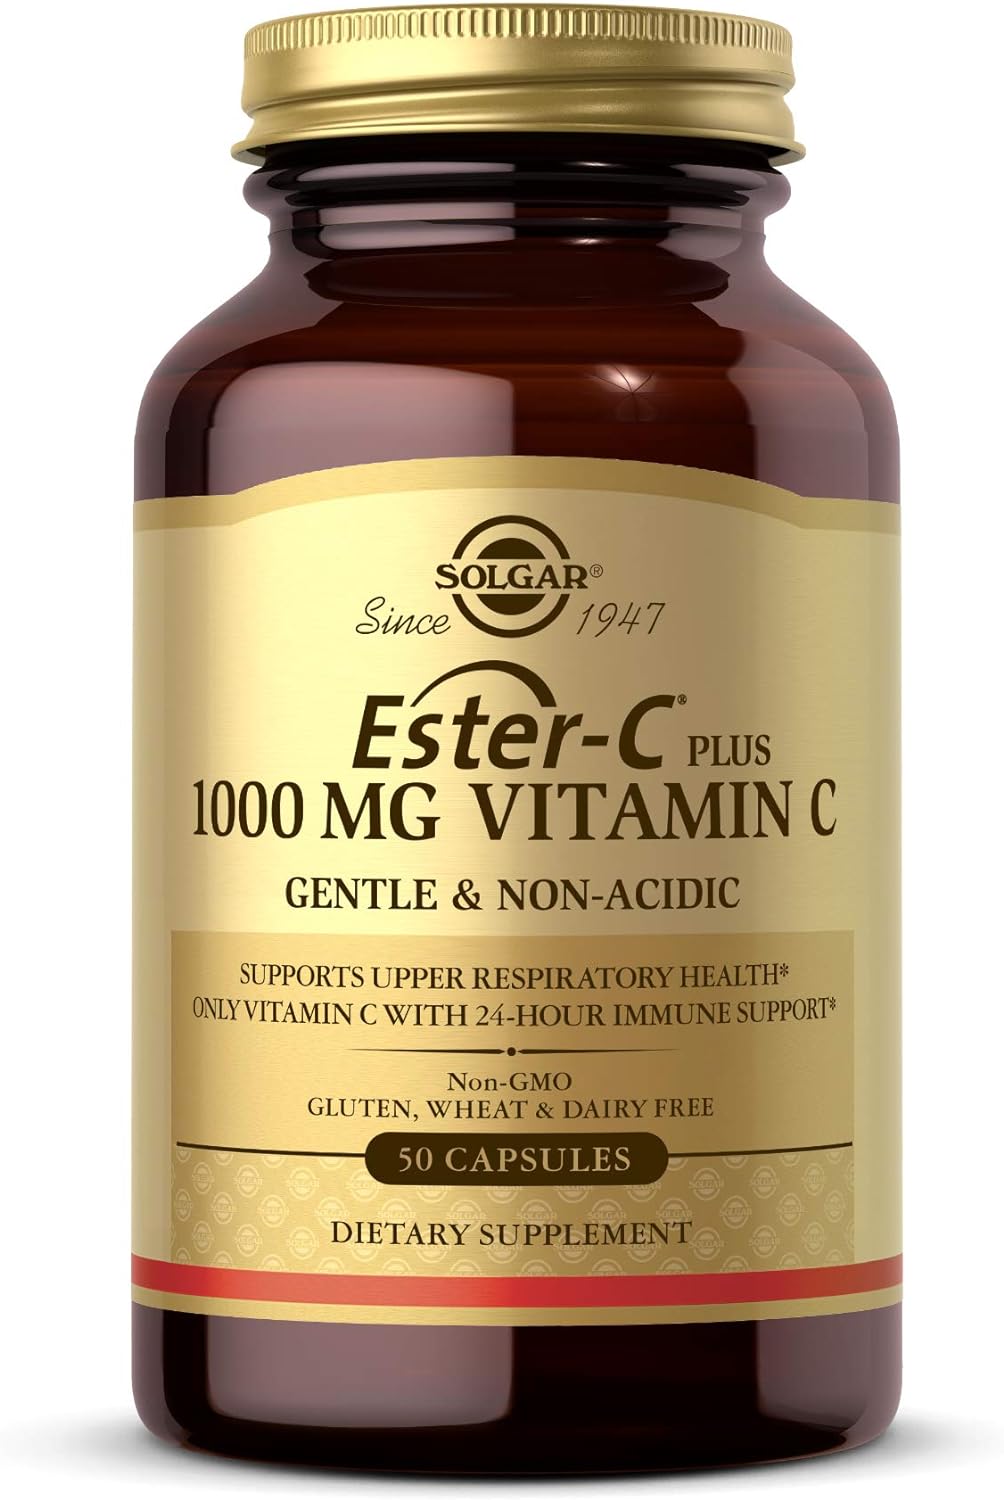 SOLGAR Ester-C Plus 1000 mg Vitamin C with Citrus Bioflavonoids - 50 C